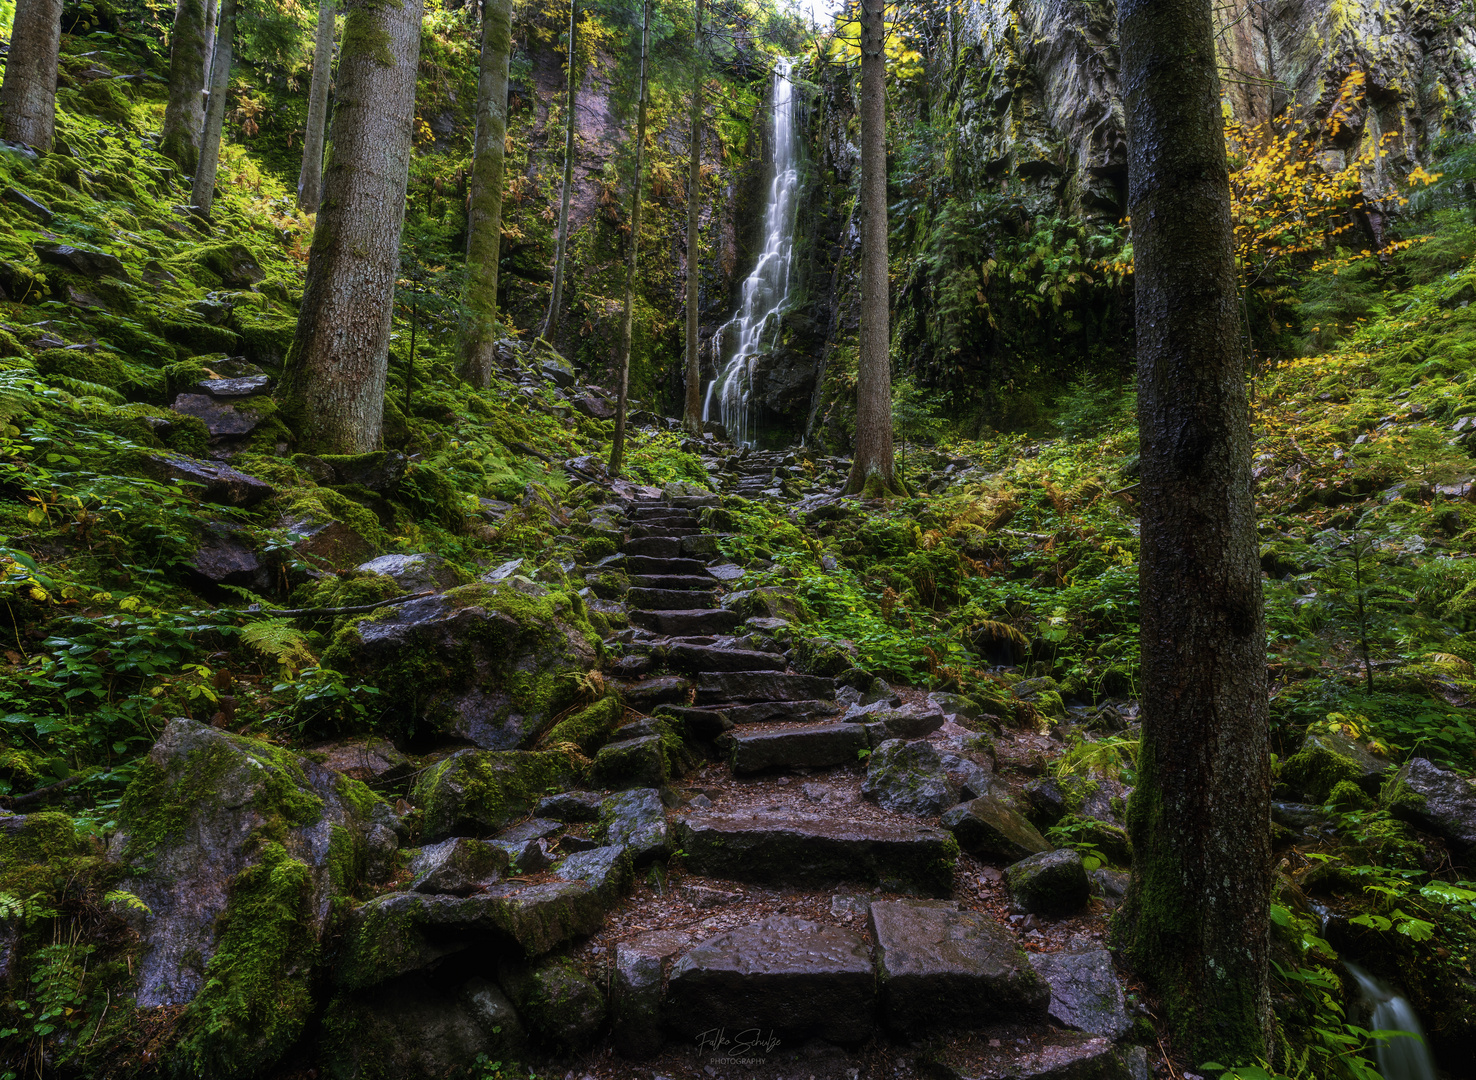 The hidden Waterfall